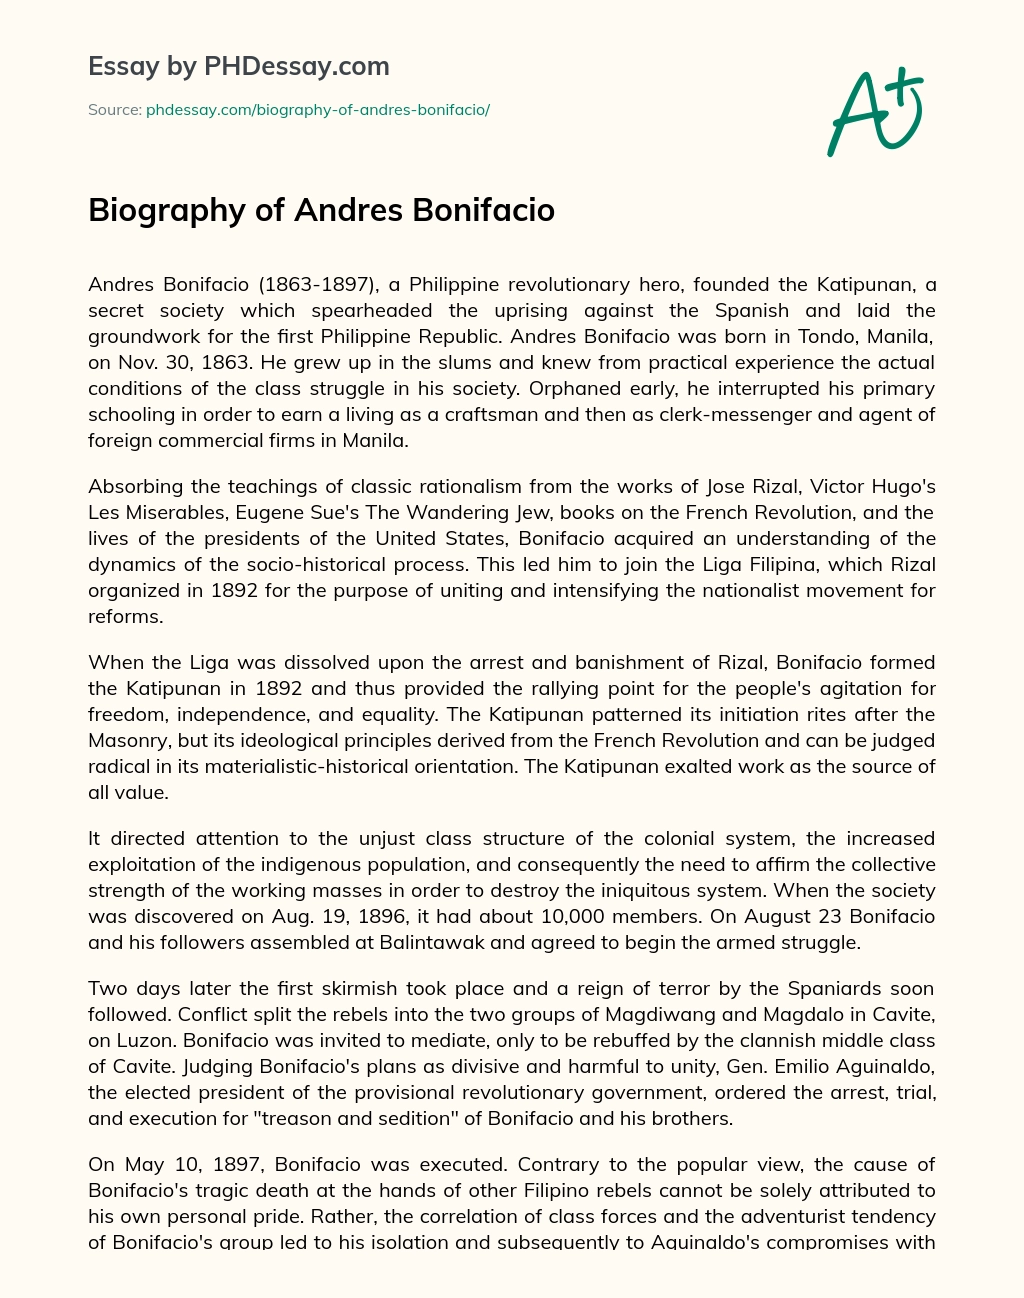 Biography of Andres Bonifacio essay